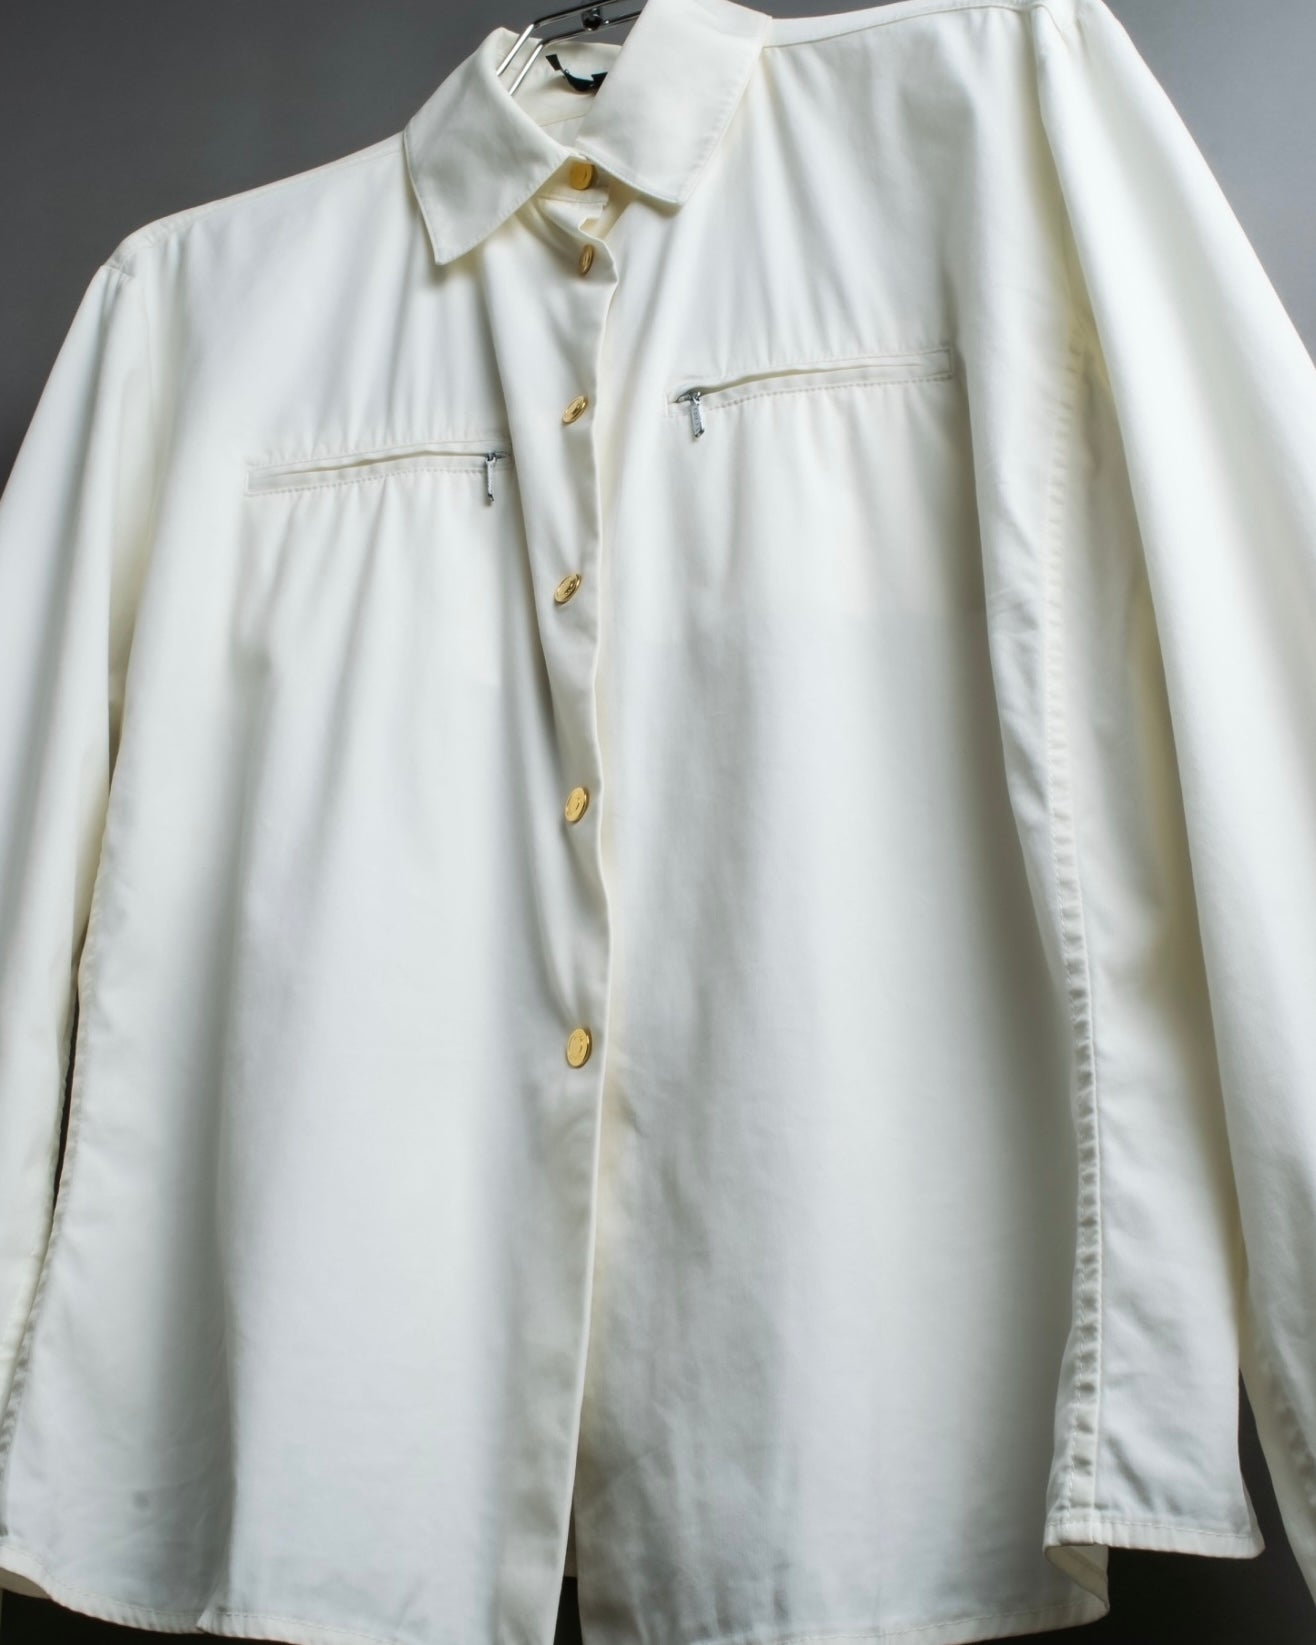 “GUCCI” zip pocket designed gold buttons shirt